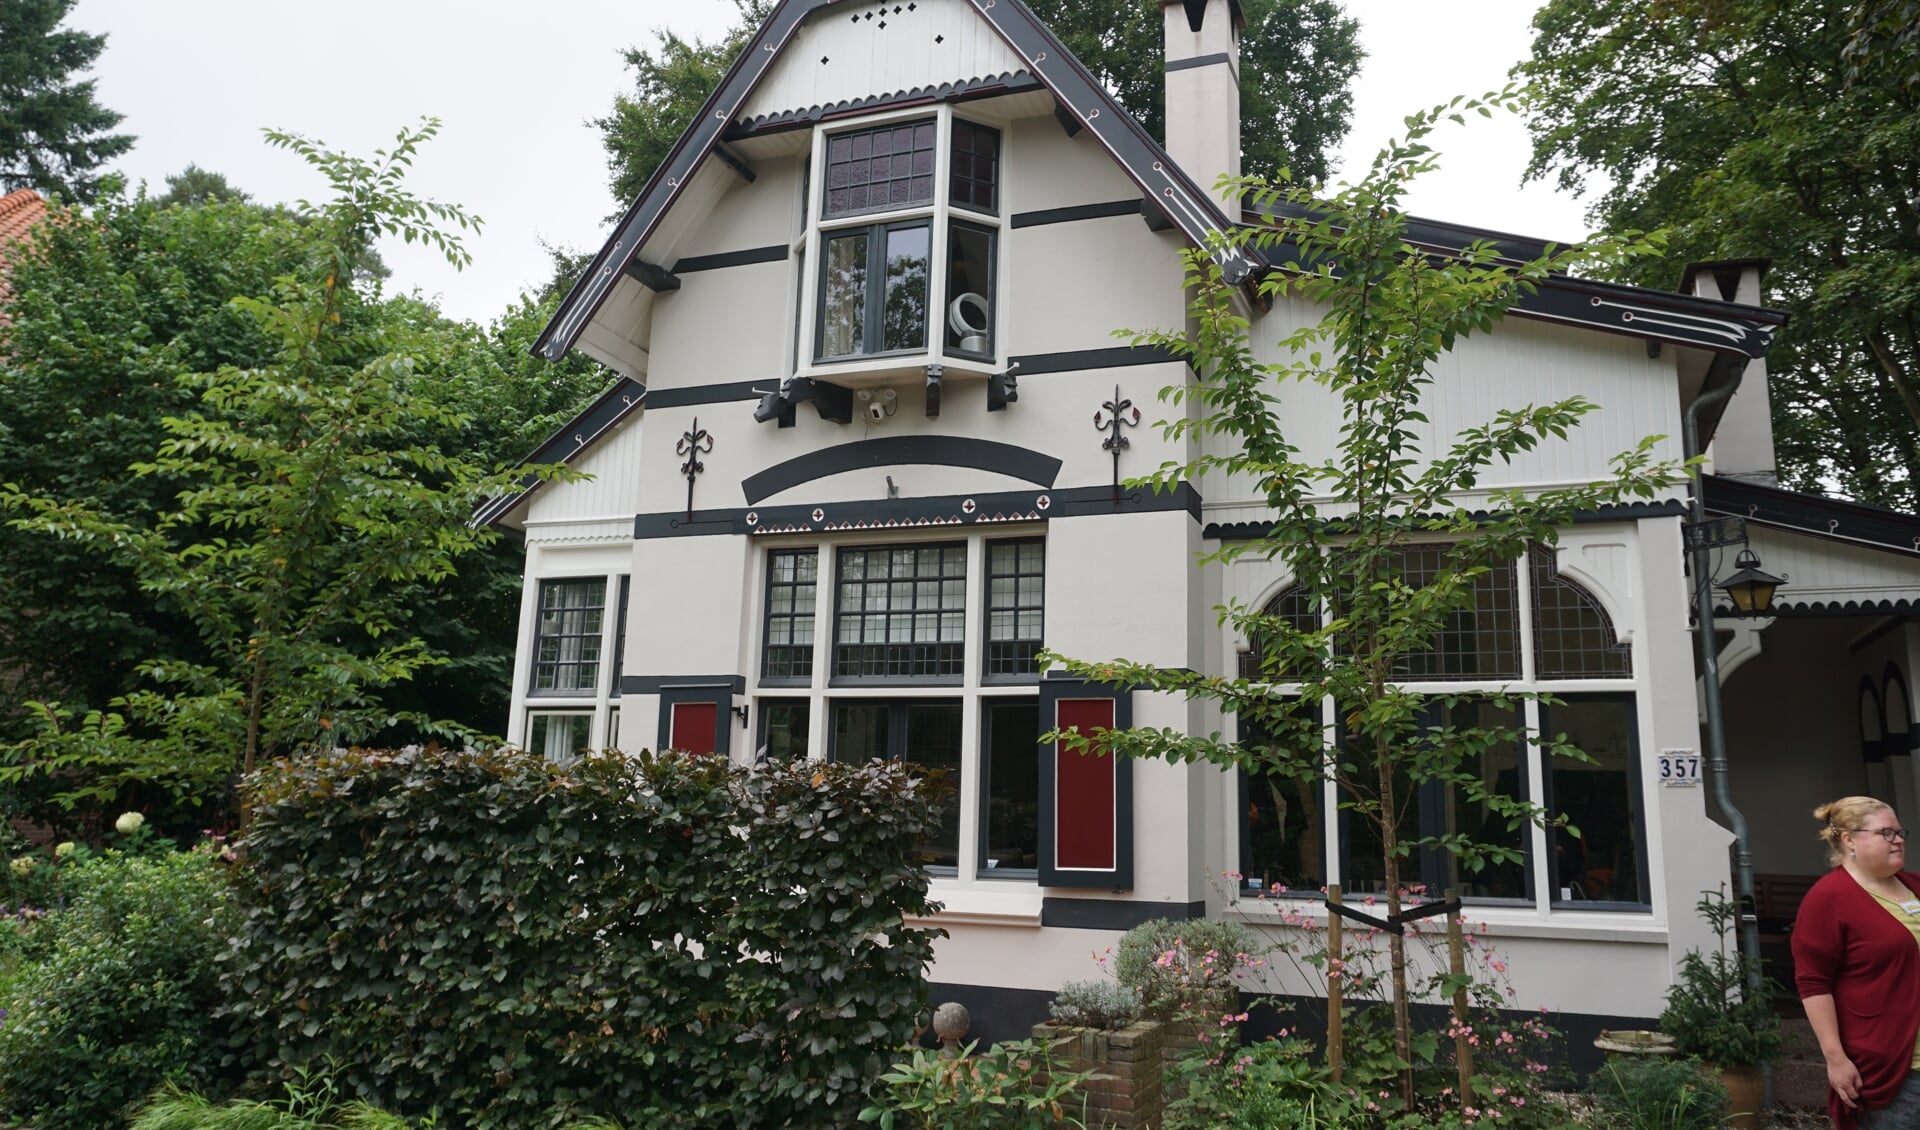 Villa met Dierenkoppen, Soestdijkseweg Noord 357, Bilthoven: Deze gepleisterde villa is in 1910 als zomerverblijfgebouwd. De vele daklijsten eindigen alle met een fraai gesneden dierenkop.